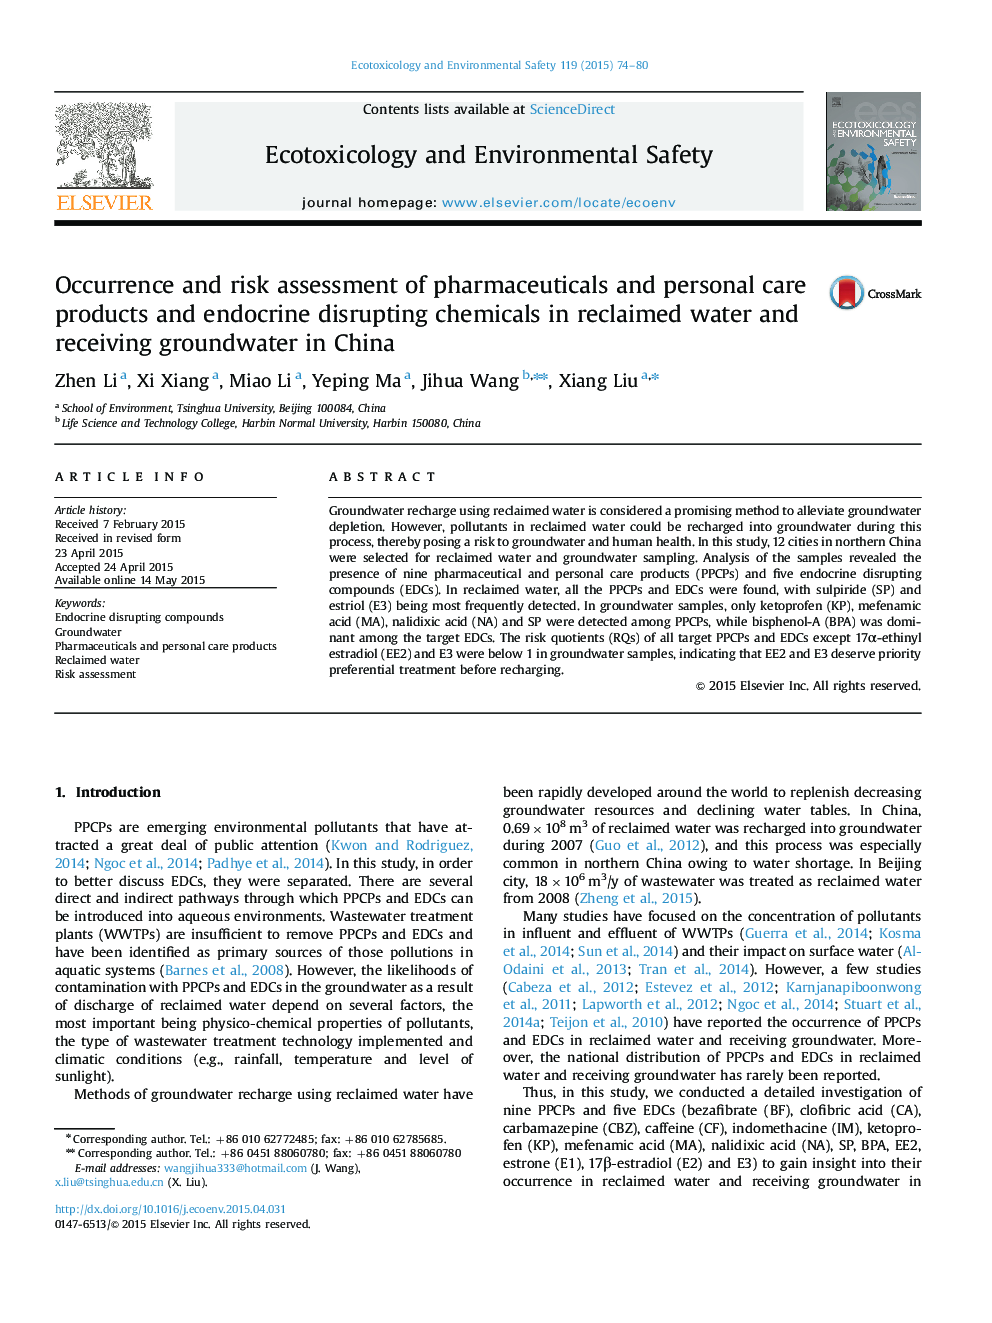 ارزیابی ریسک و ارزیابی داروها و محصولات مراقبت شخصی و مواد شیمیایی خرابکار غدد درون ریز در آب بازیافت شده و دریافت آب های زیرزمینی در چین 